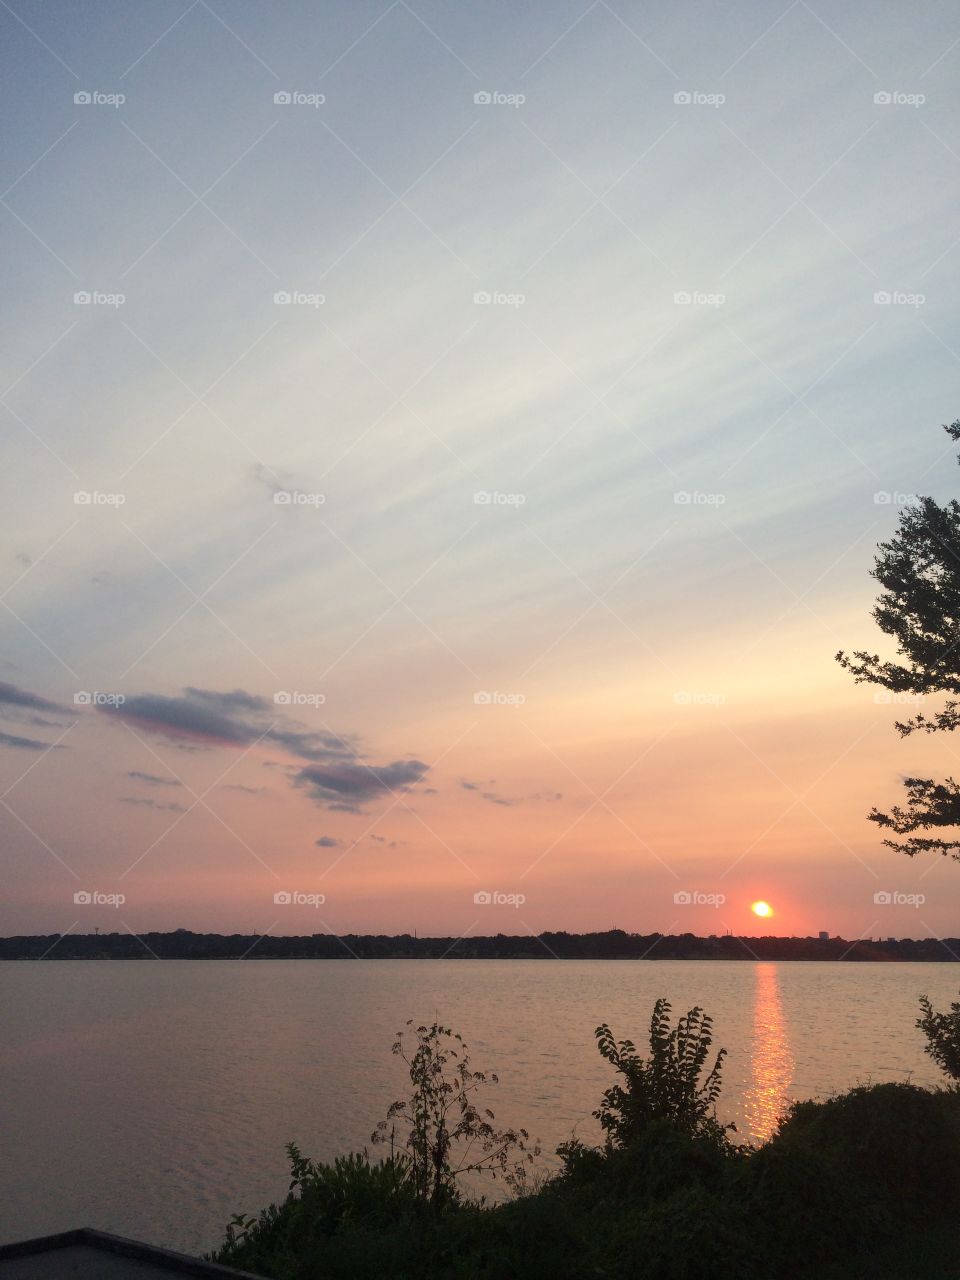 Amazing sunset. Beautiful sunset on a lake